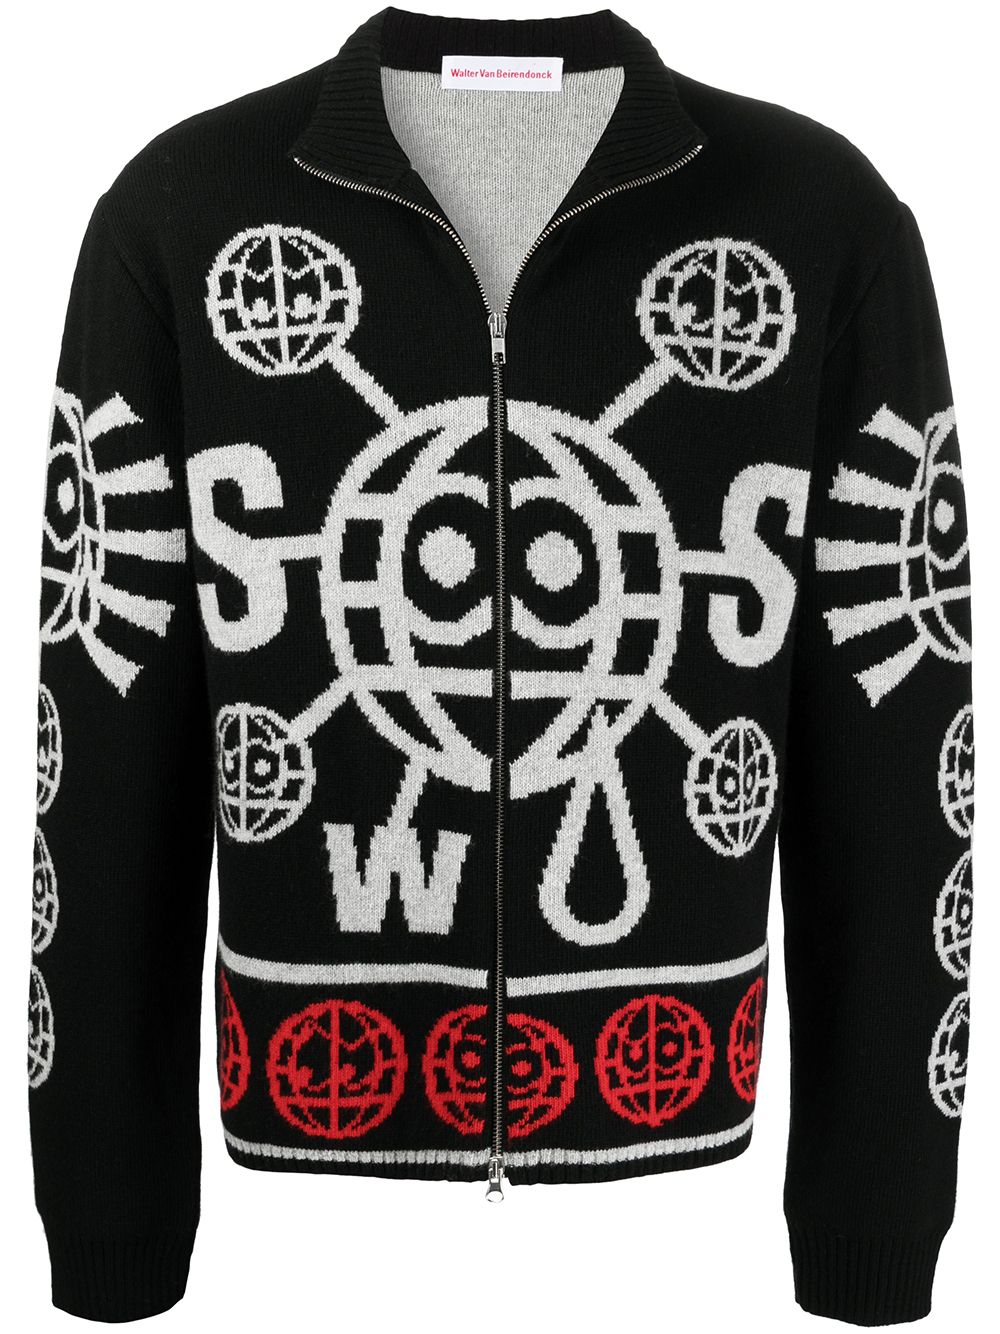 WorldpiweekShops - Owned Globe zip knit jacket parties black 3003